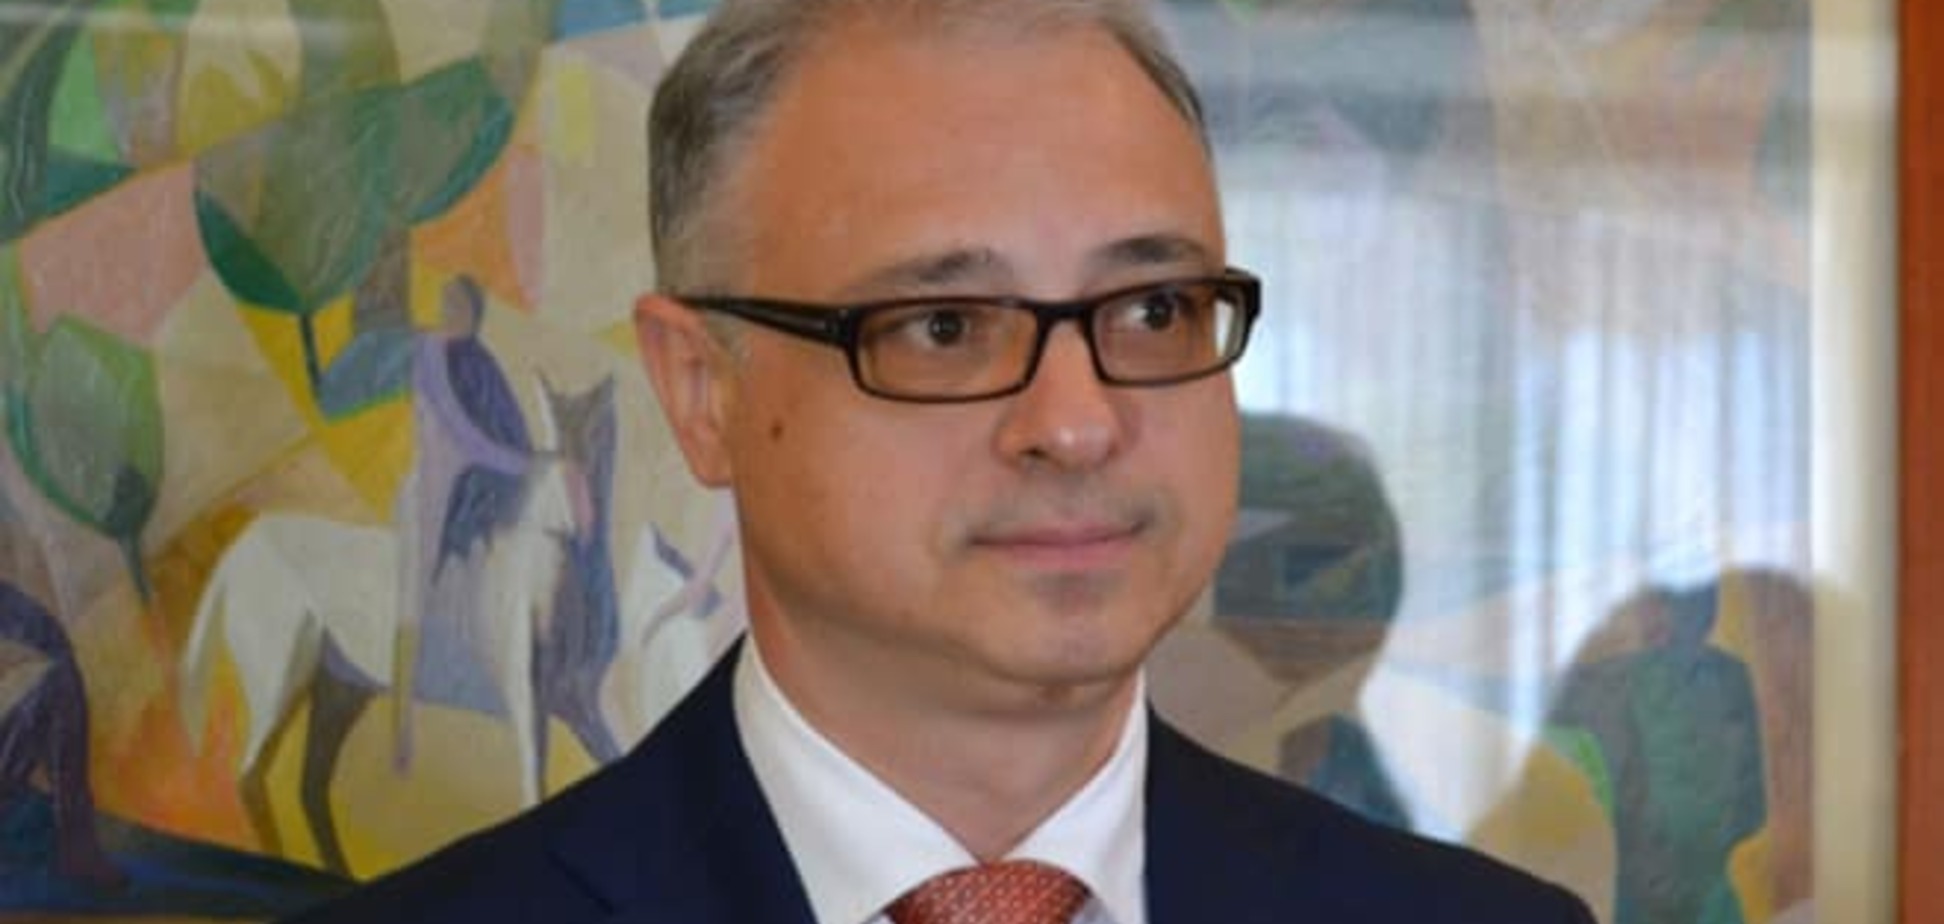 Посол Украины в Италии высказал претензии к российскому паспорту Маркова